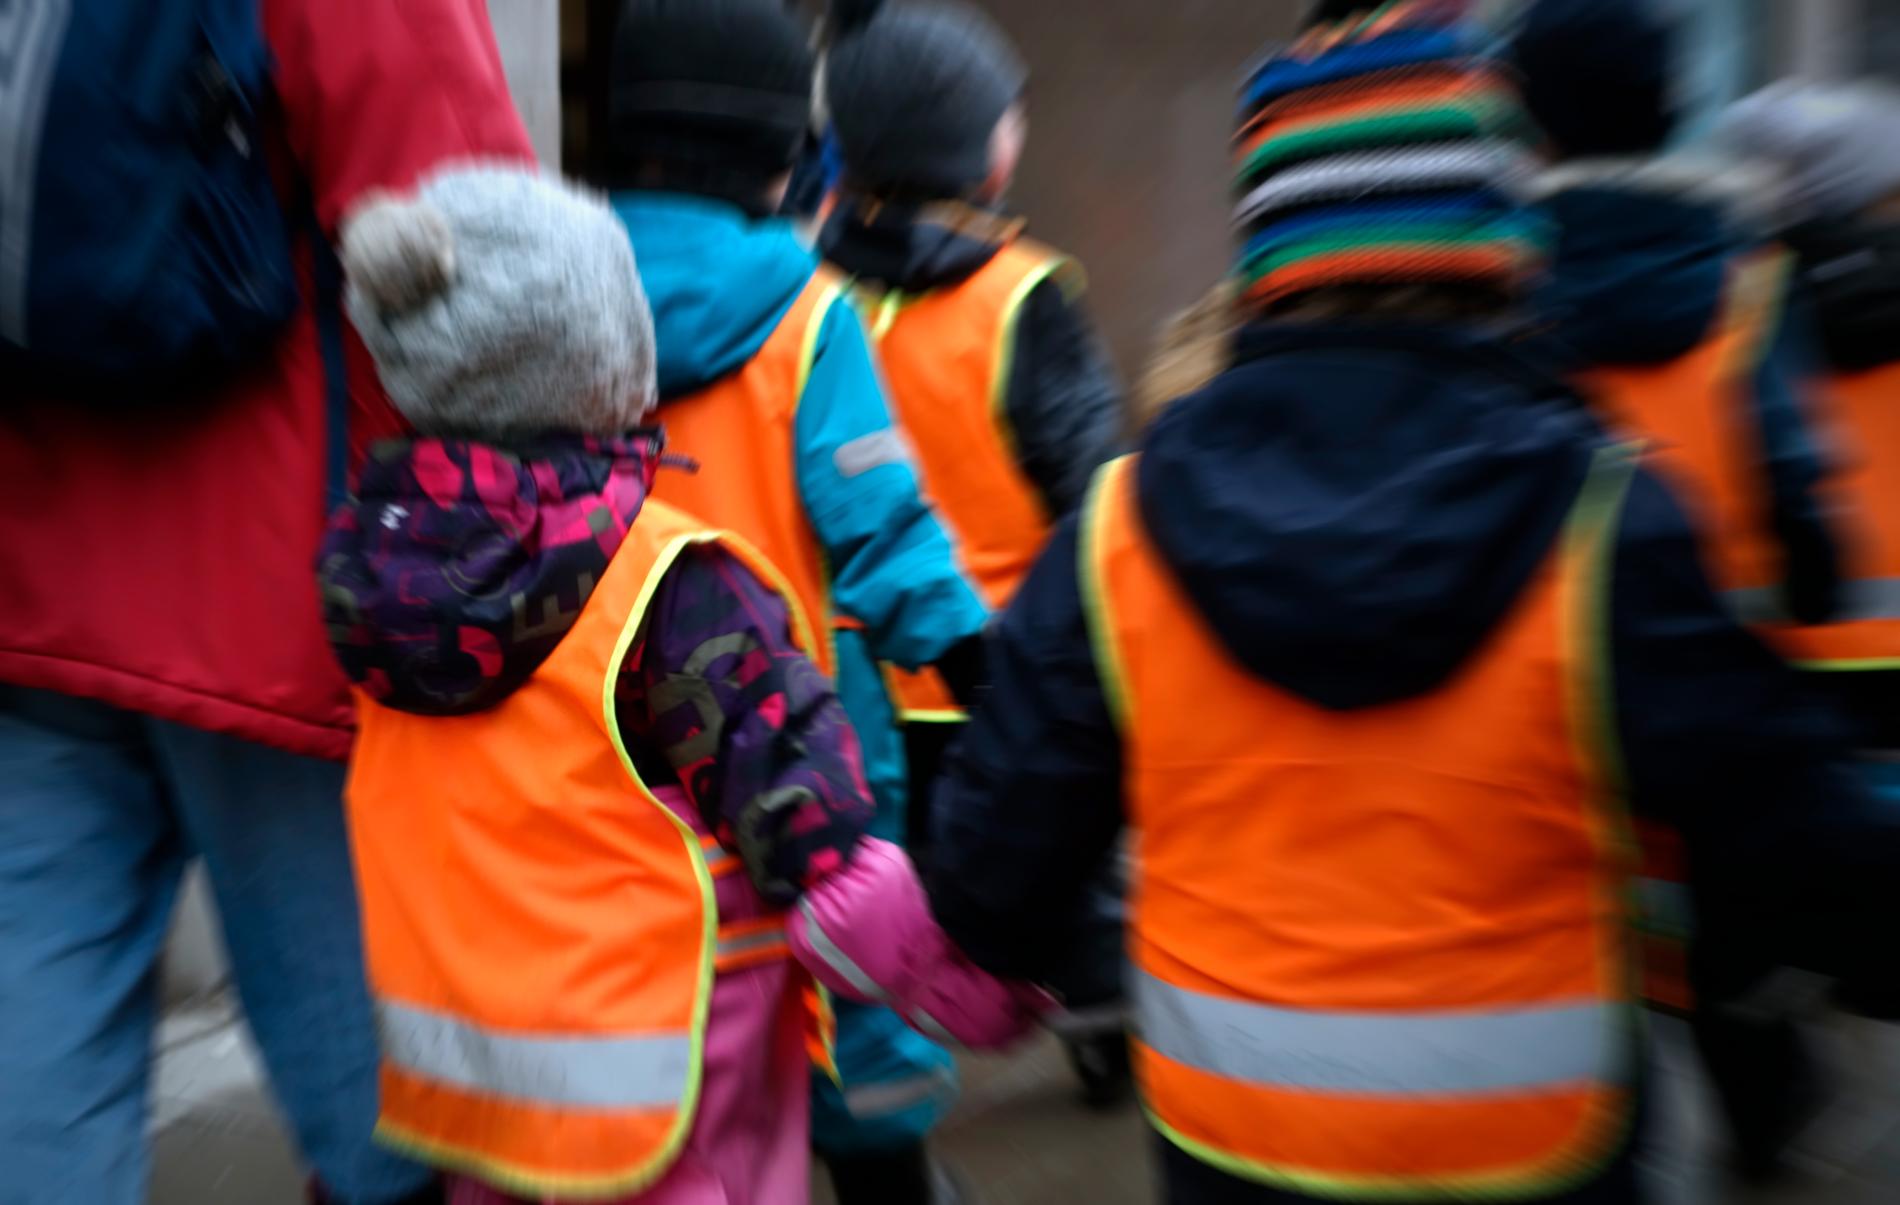 Förskolan i Göteborg utreder om personalen utsatts för otillåten påverkan. Arkivbild.